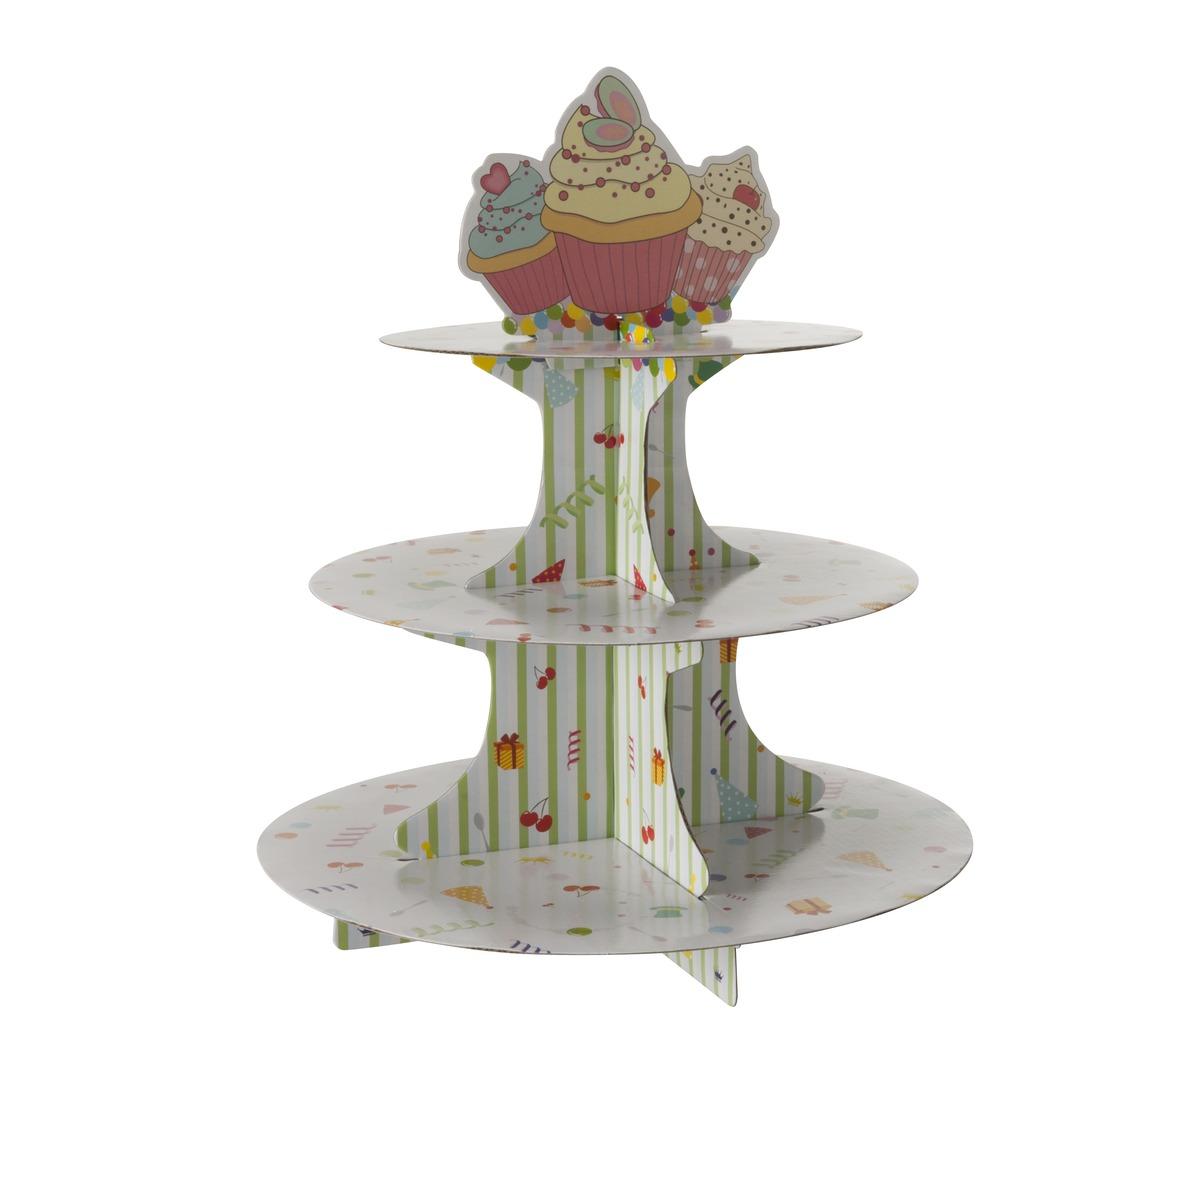 Support à cupcake 3 étages en carton - diamètre 30 x H 36 cm - multicolore